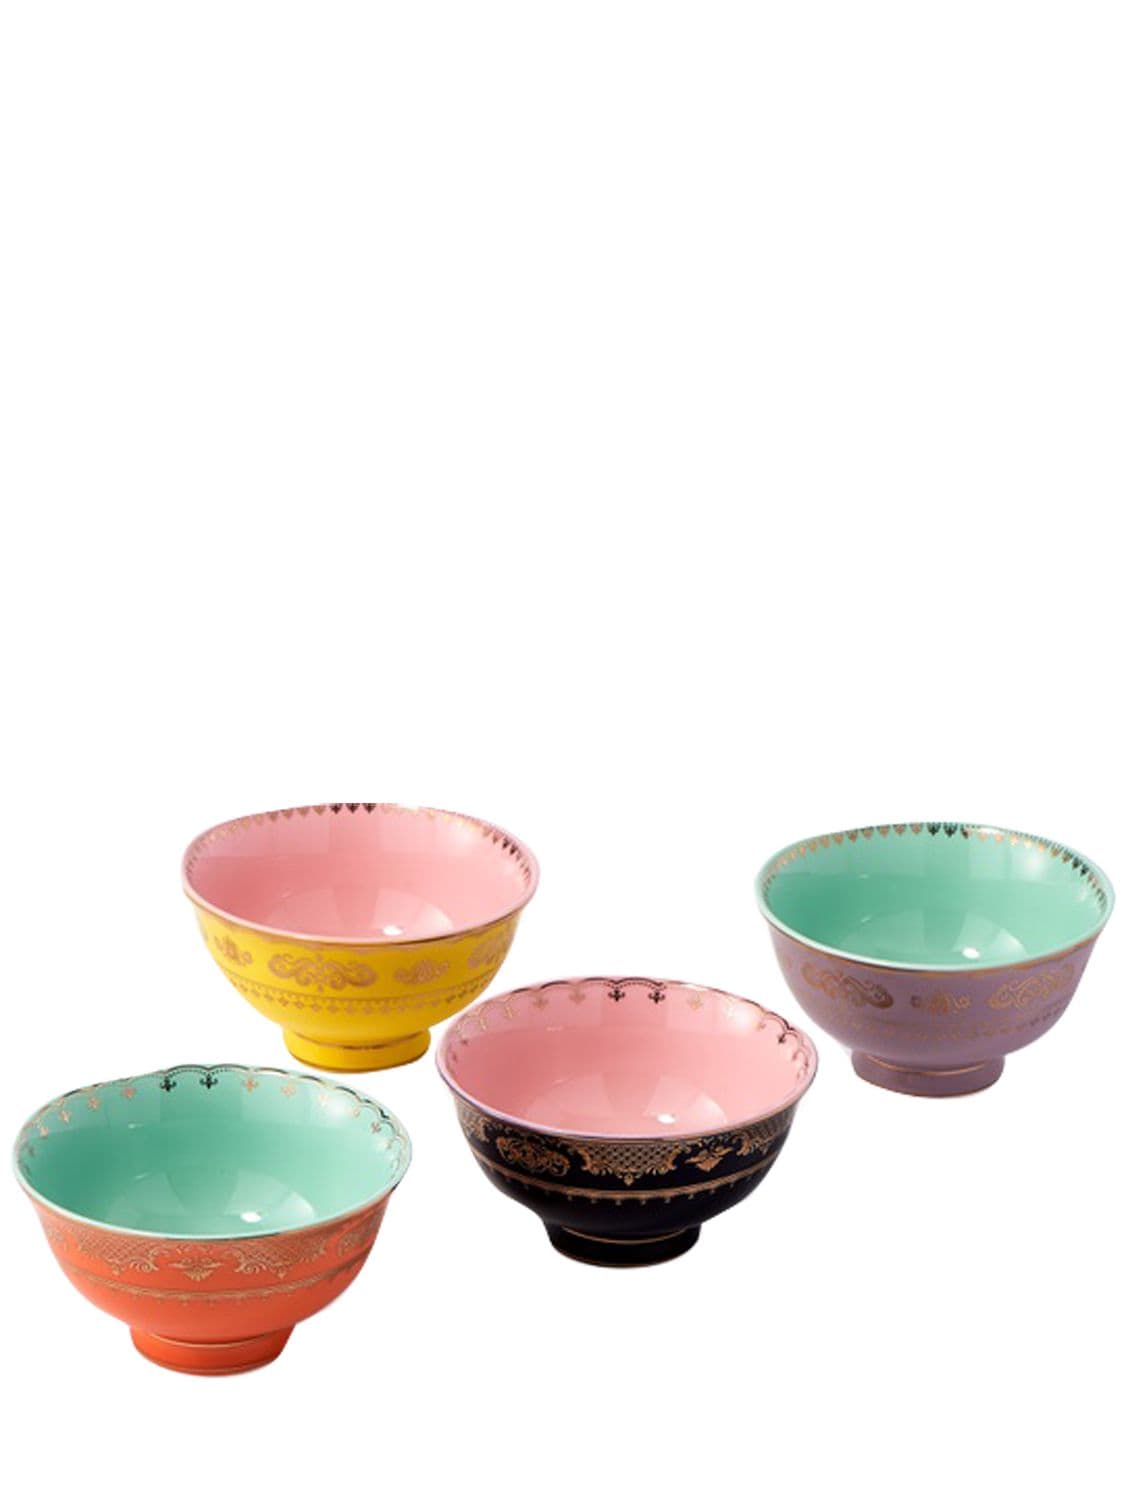 Polspotten Set Of 4 Small Grandpa Bowls In Multicolor